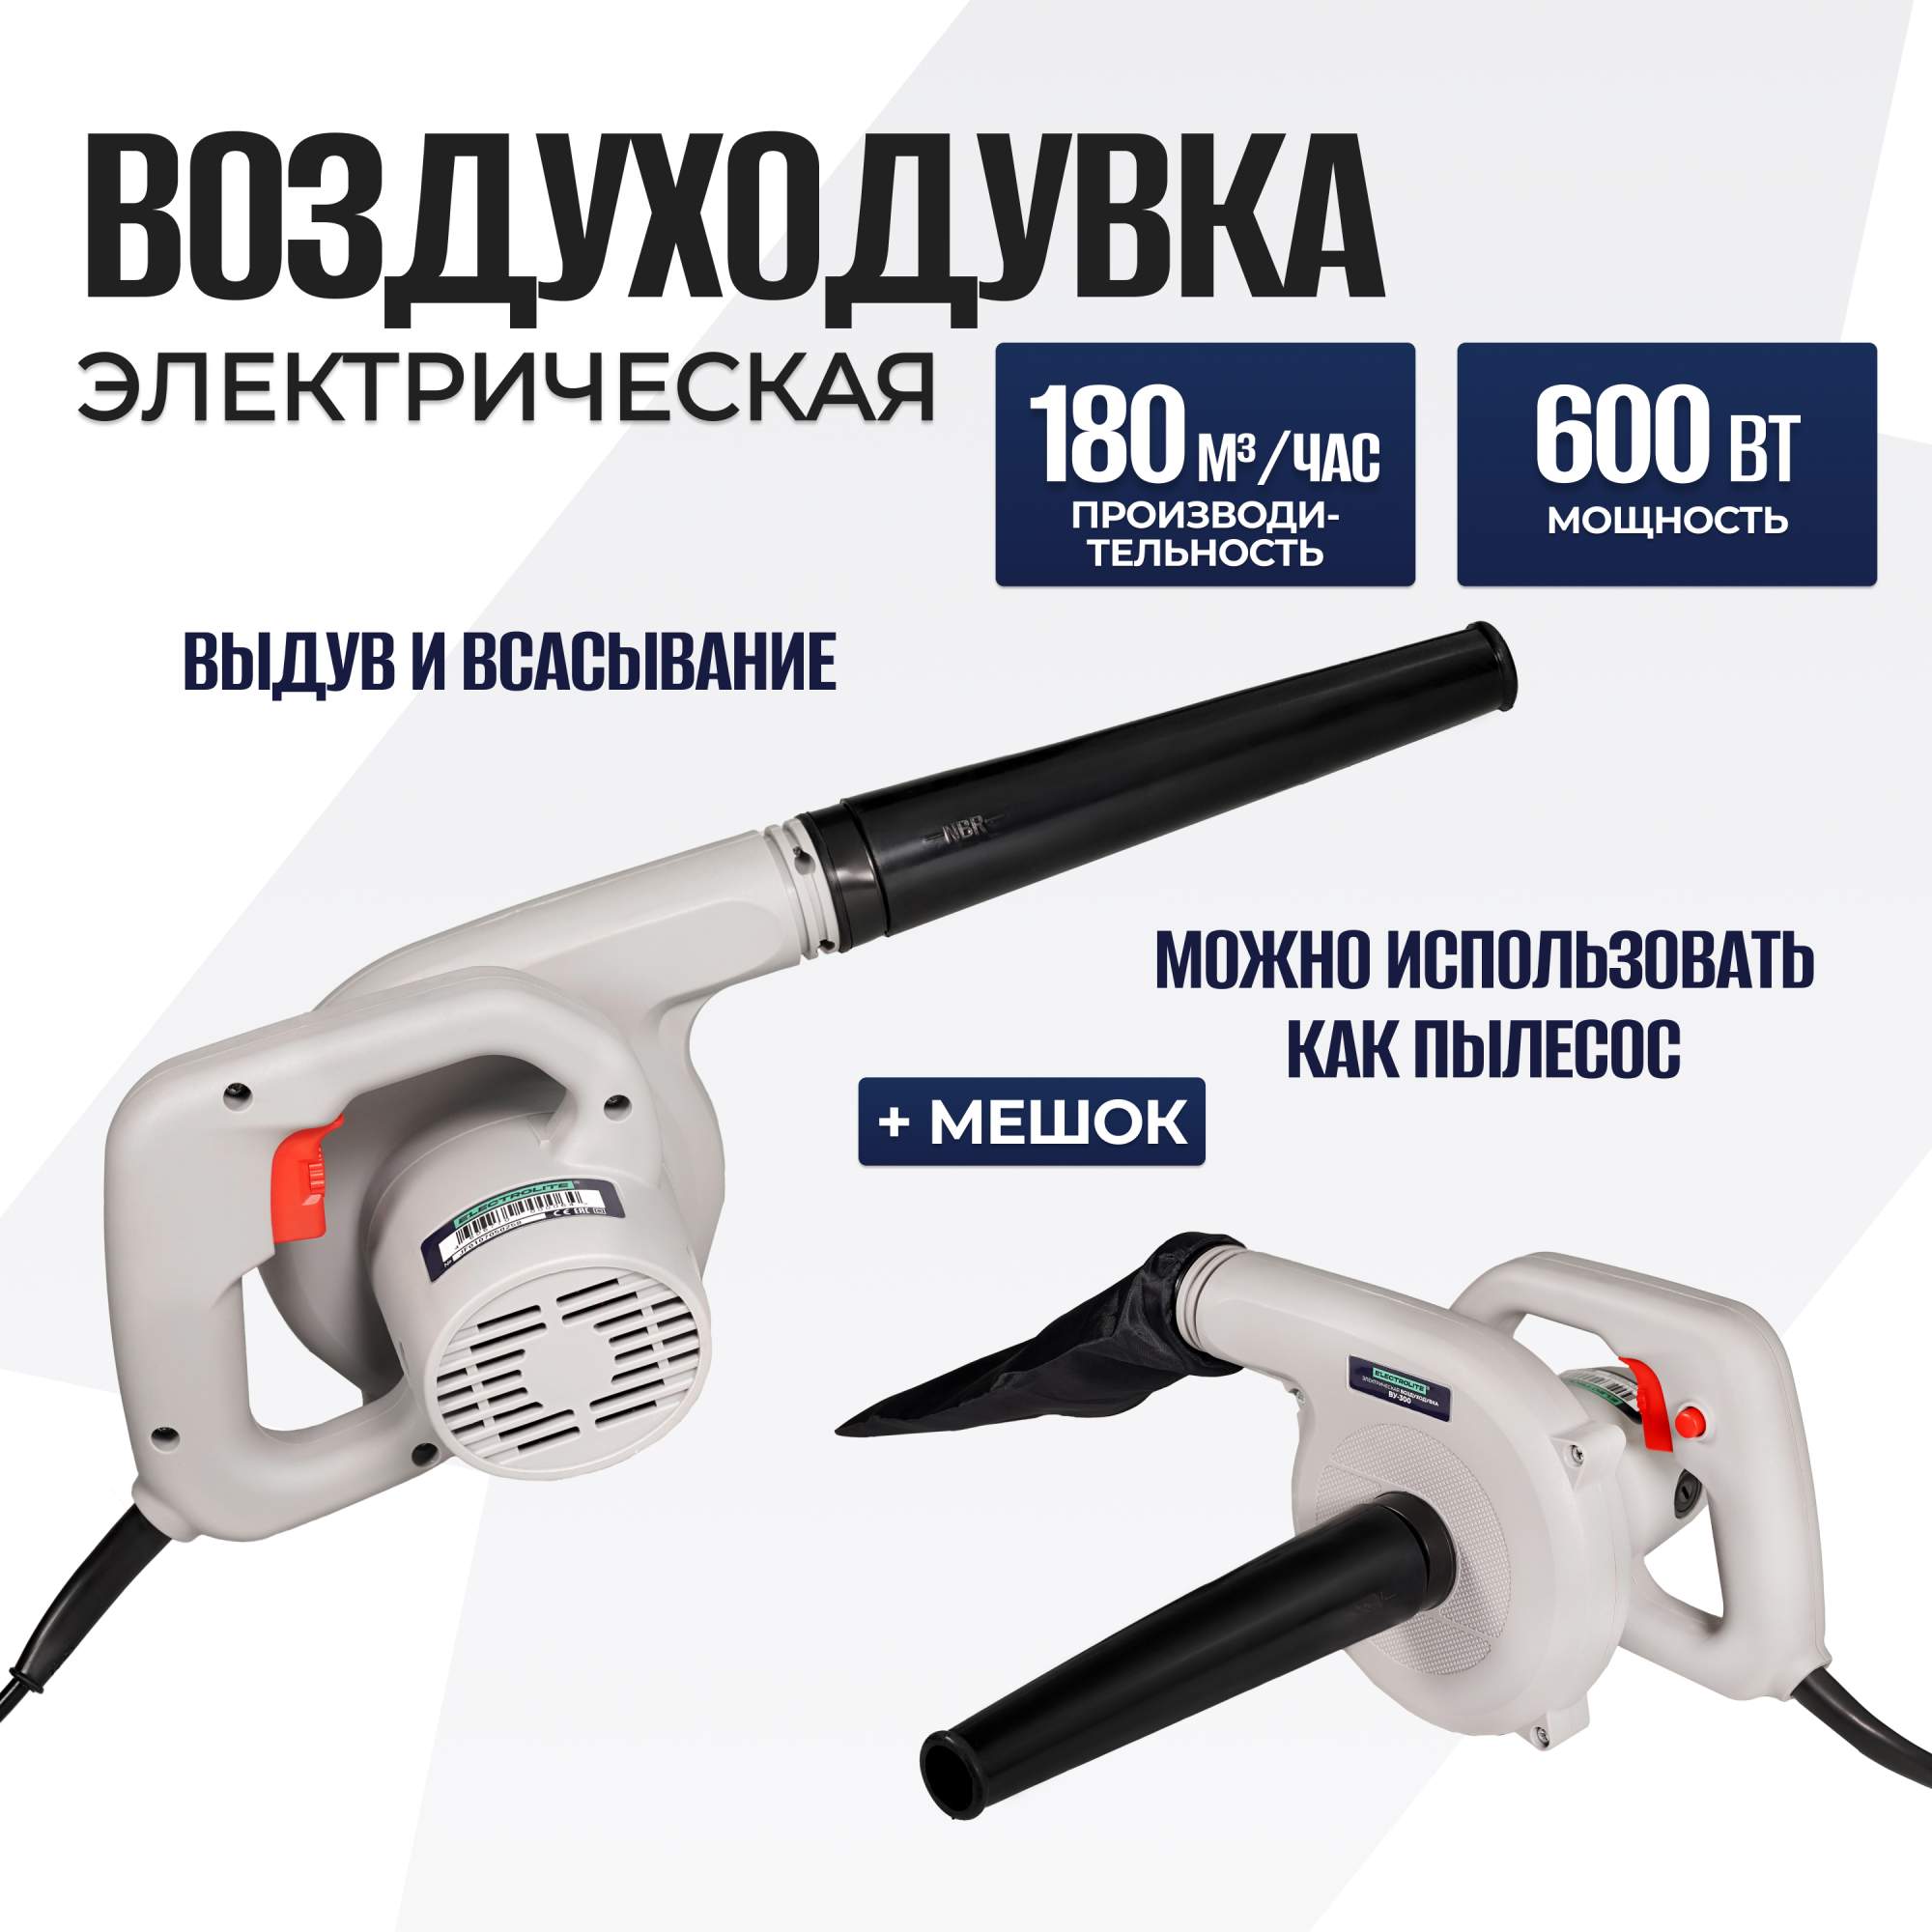 Электрическая воздуходувка ELECTROLITE ВУ 300 (600 Вт, 180 м/ч, рег. оборотов, мешок) - купить в ELECTROLITE Москва (со склада СберМегаМаркет), цена на Мегамаркет